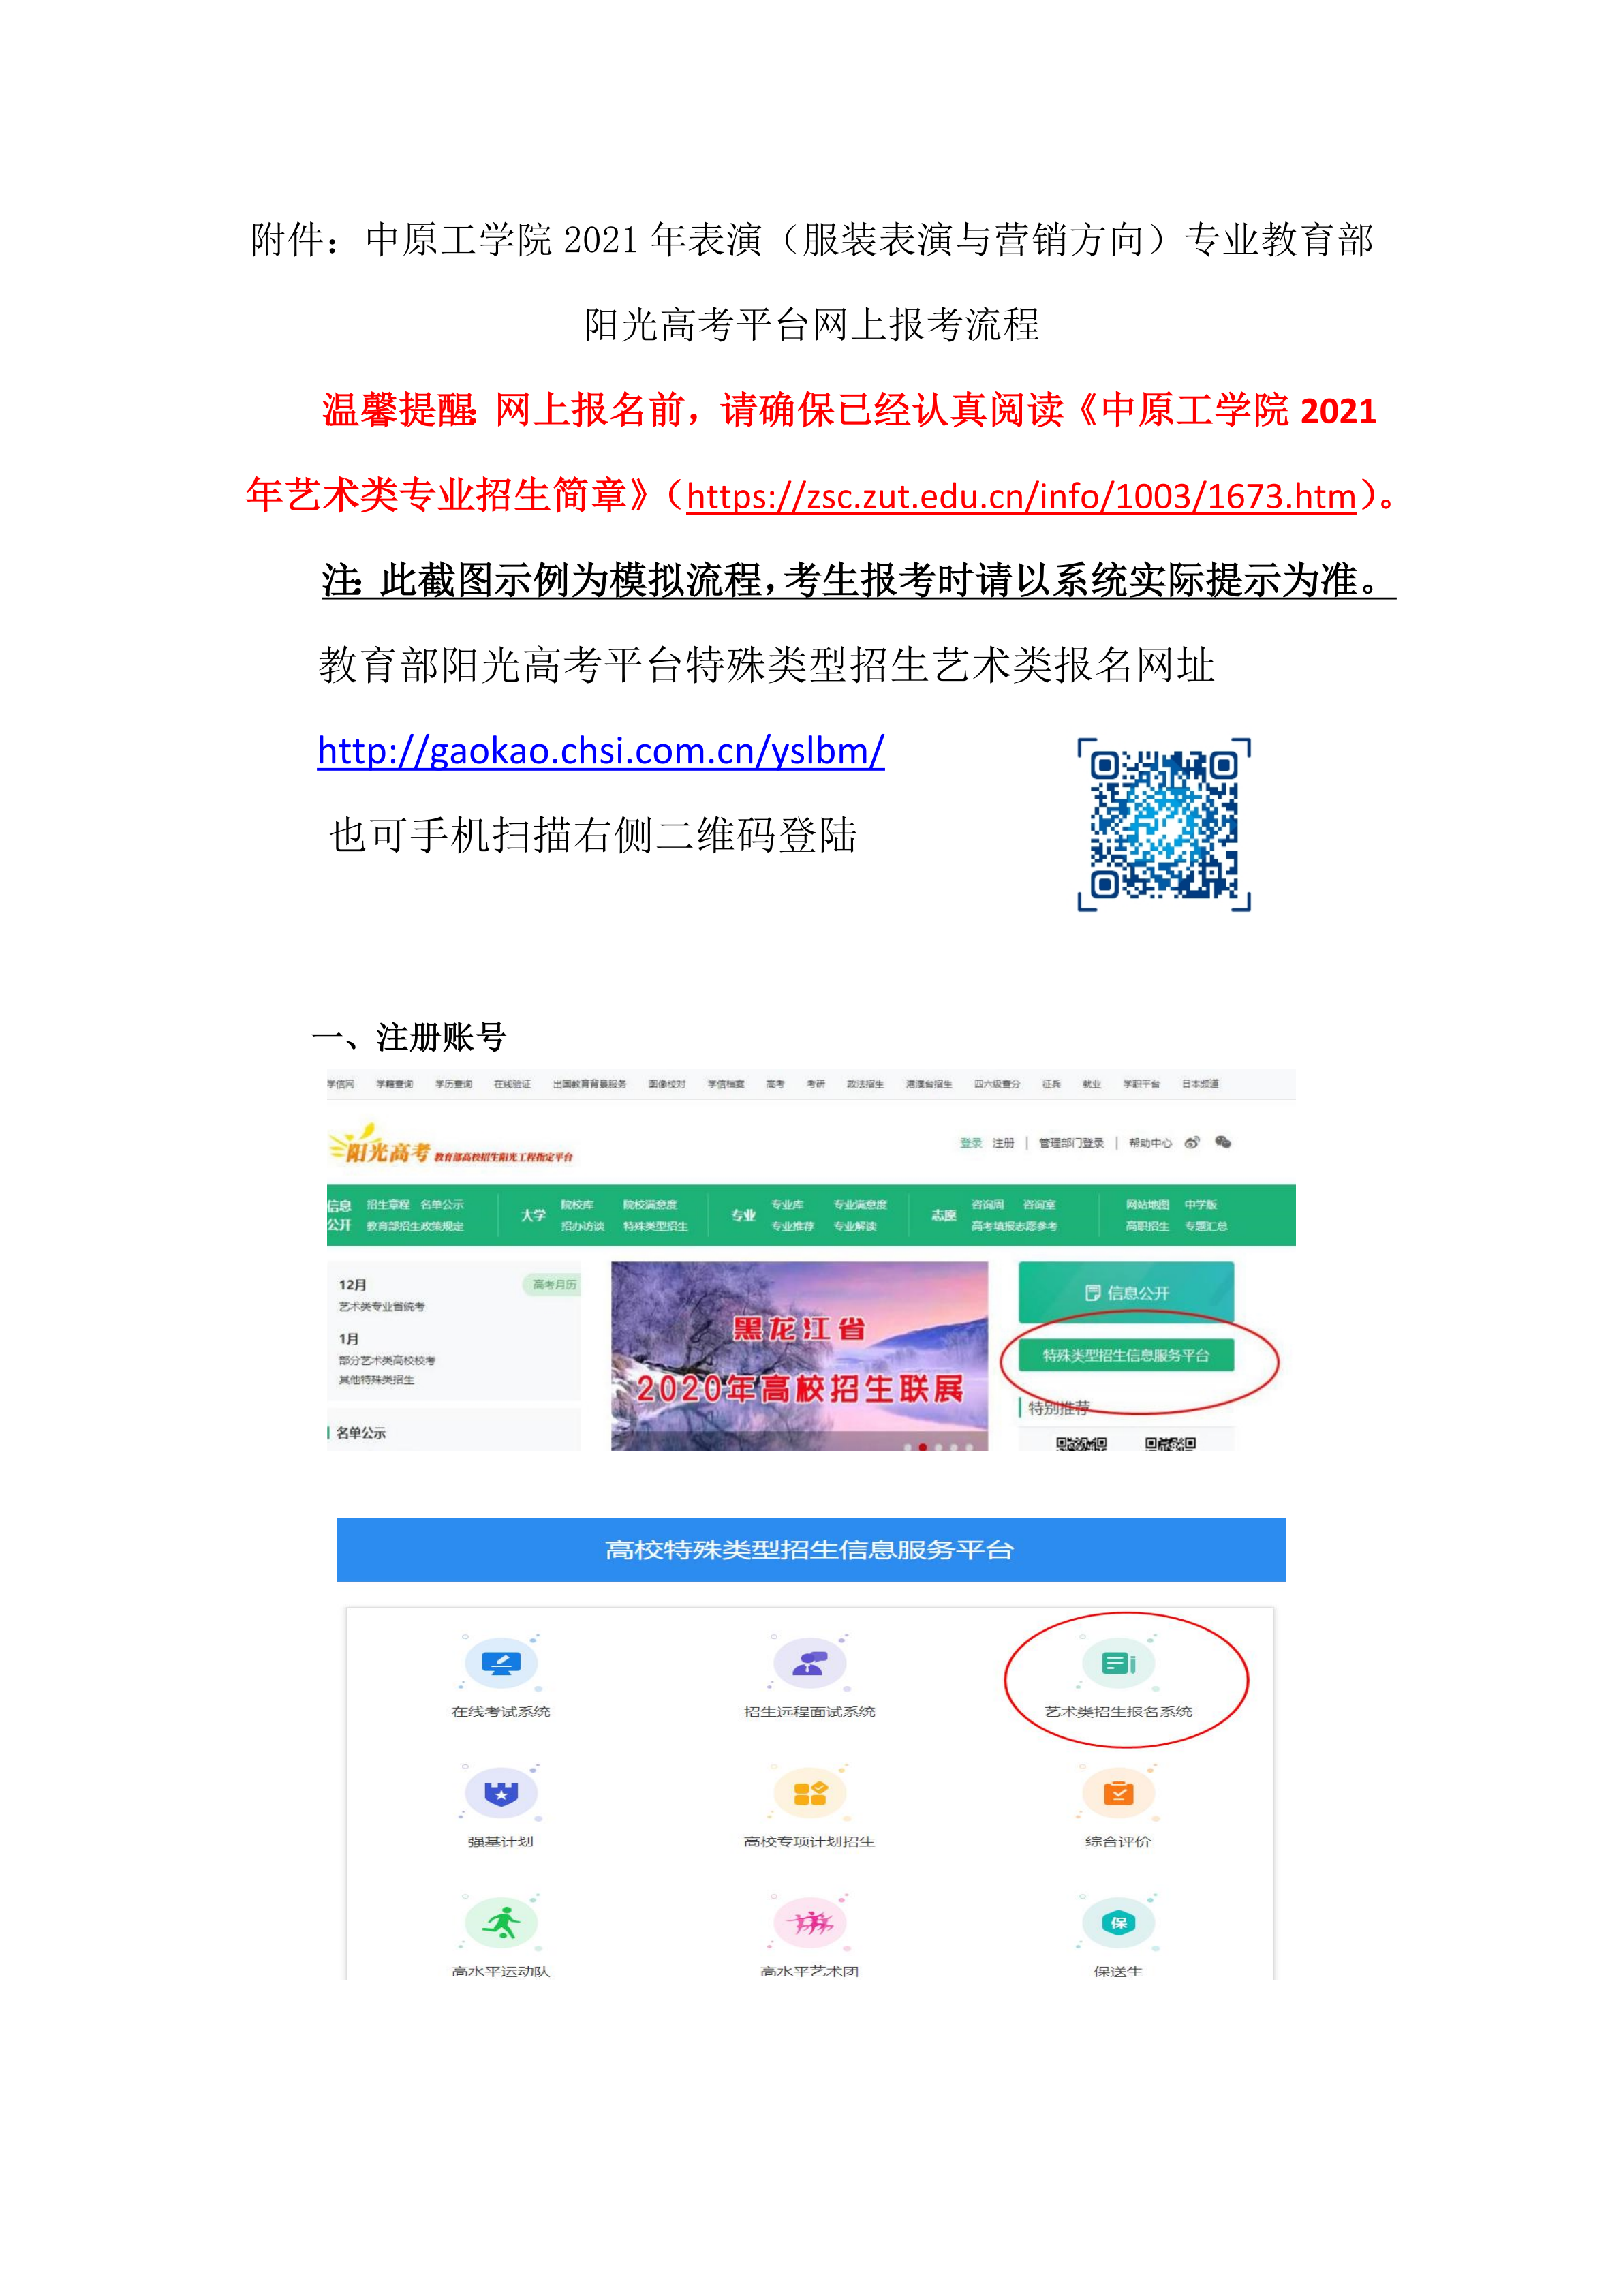 中原工学院表演专业网上报名流程(1)_1.png